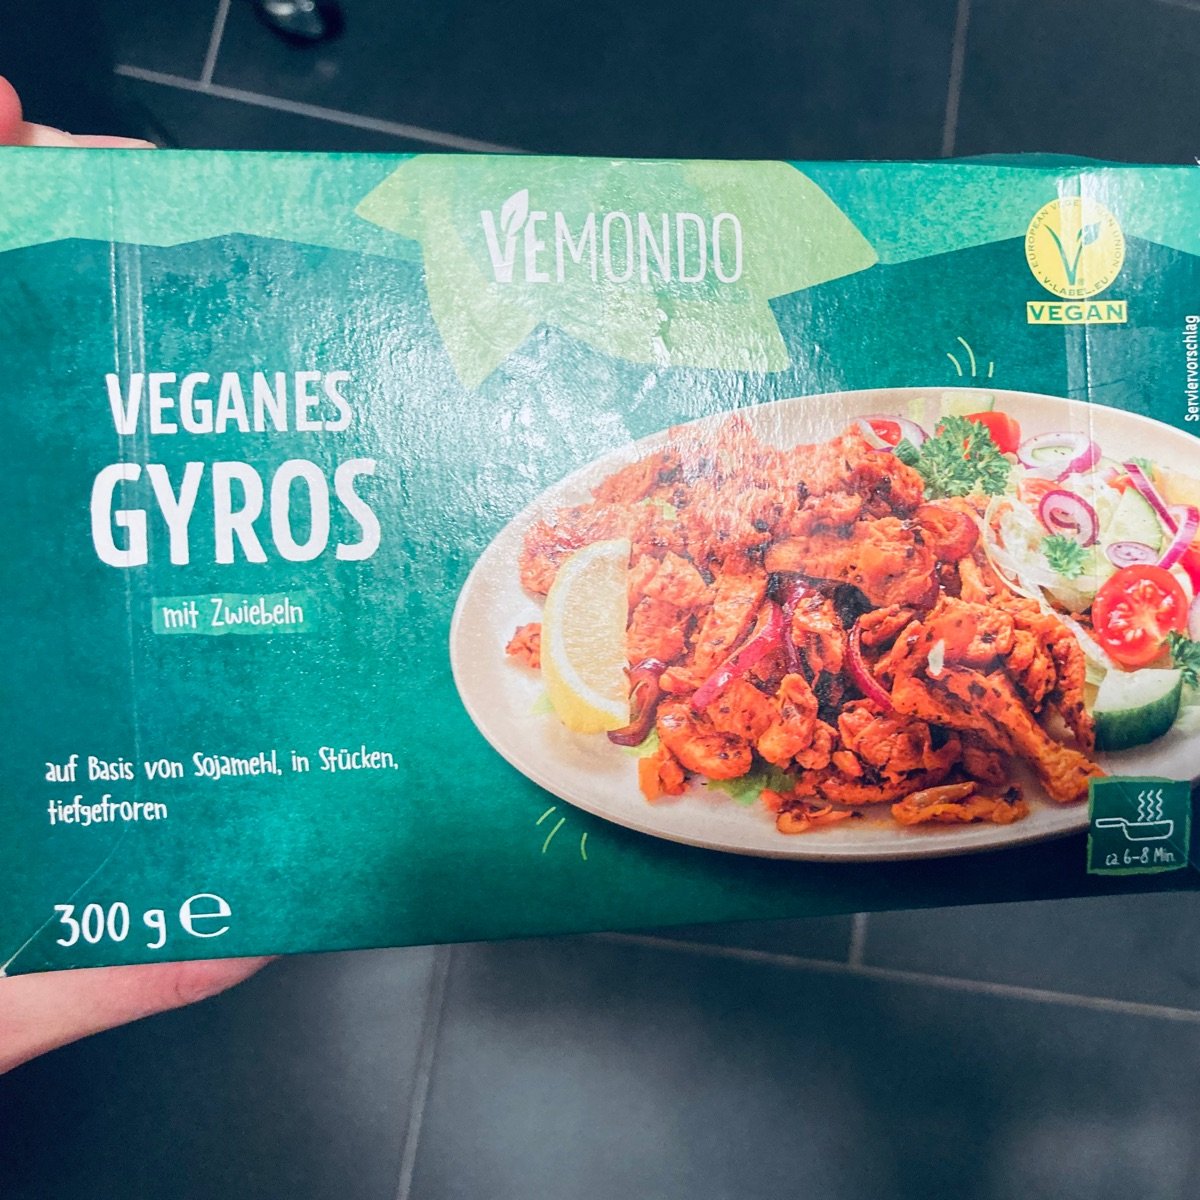 Vemondo Gyros mit Zwiebeln, vegan Review | abillion